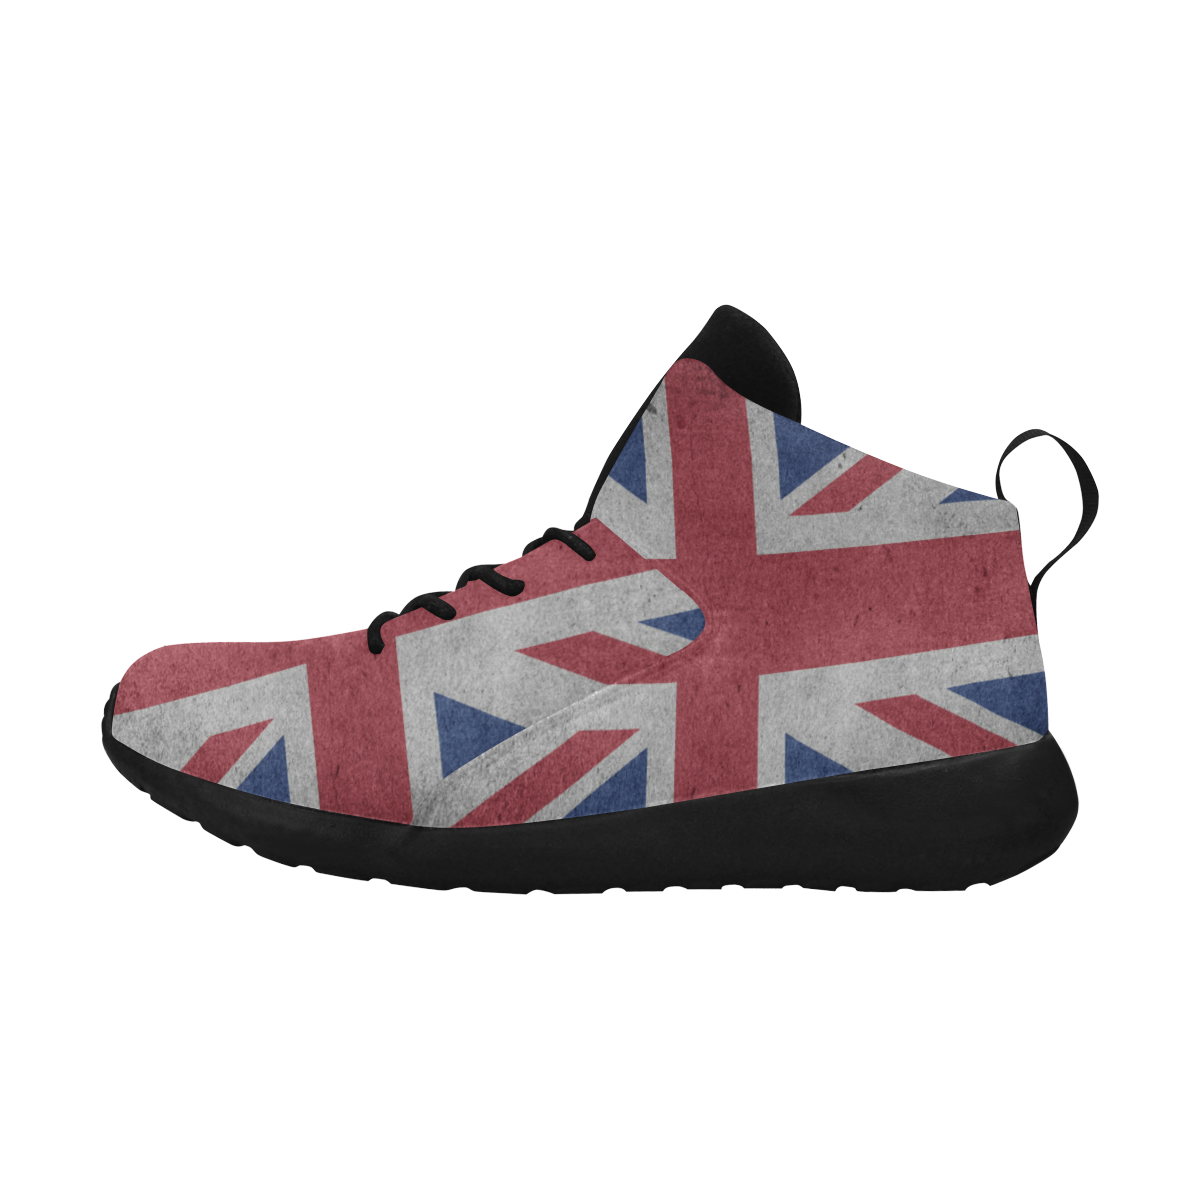 United Kingdom Union Jack Flag - Grunge 1 Men's Chukka Training Shoes (Model 57502)